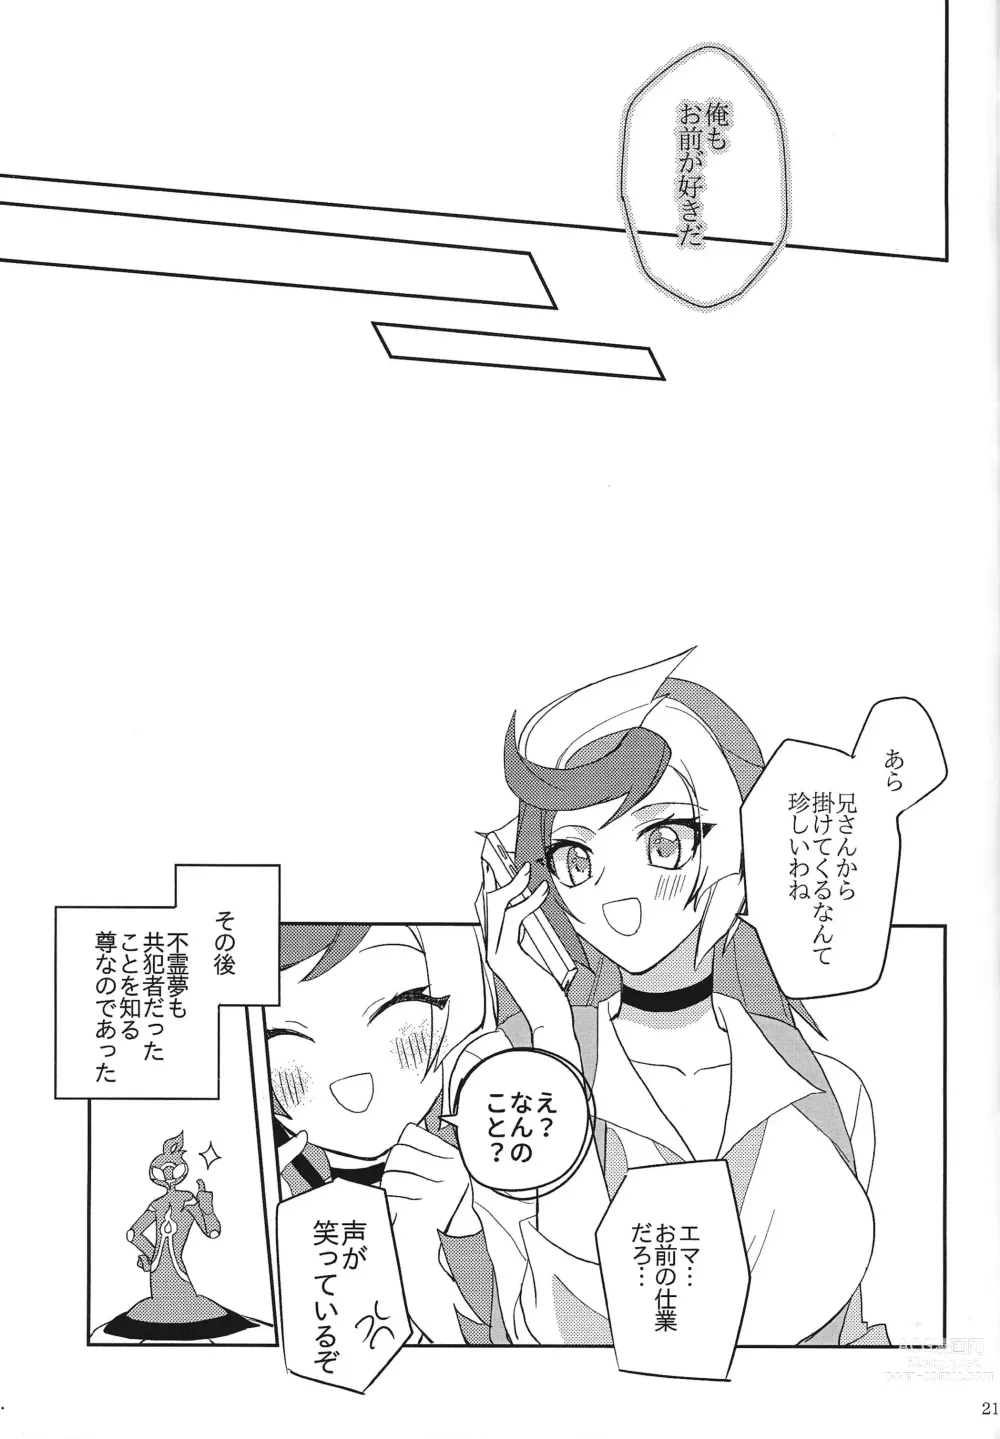 Page 20 of doujinshi Muchu ni natte yo maidarin